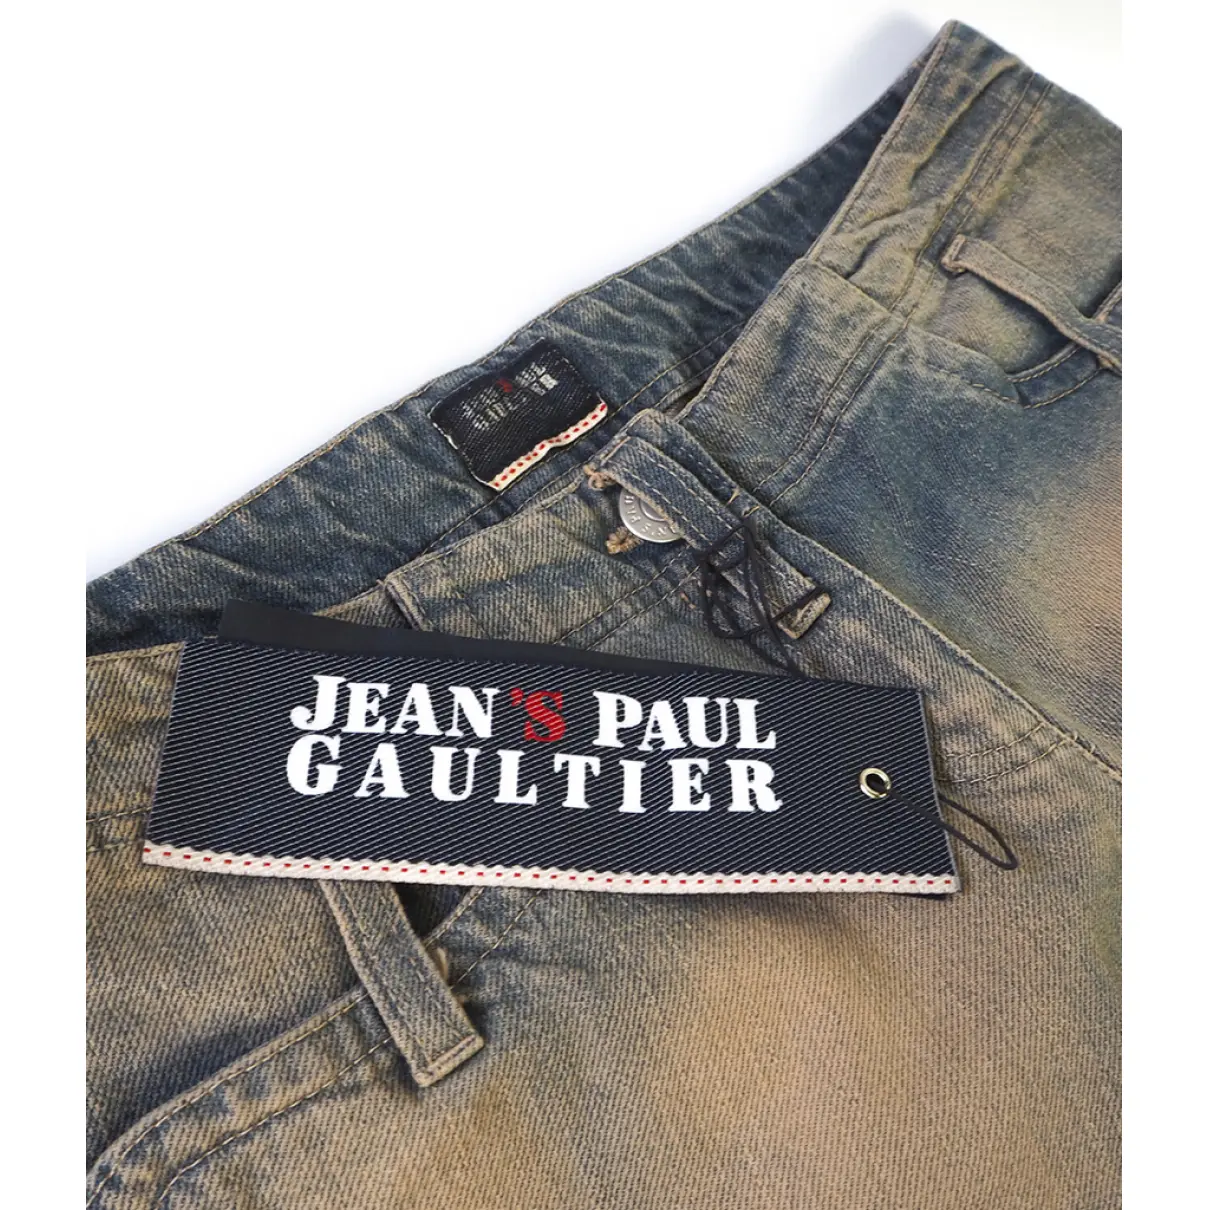 Buy Jean Paul Gaultier Large jeans online